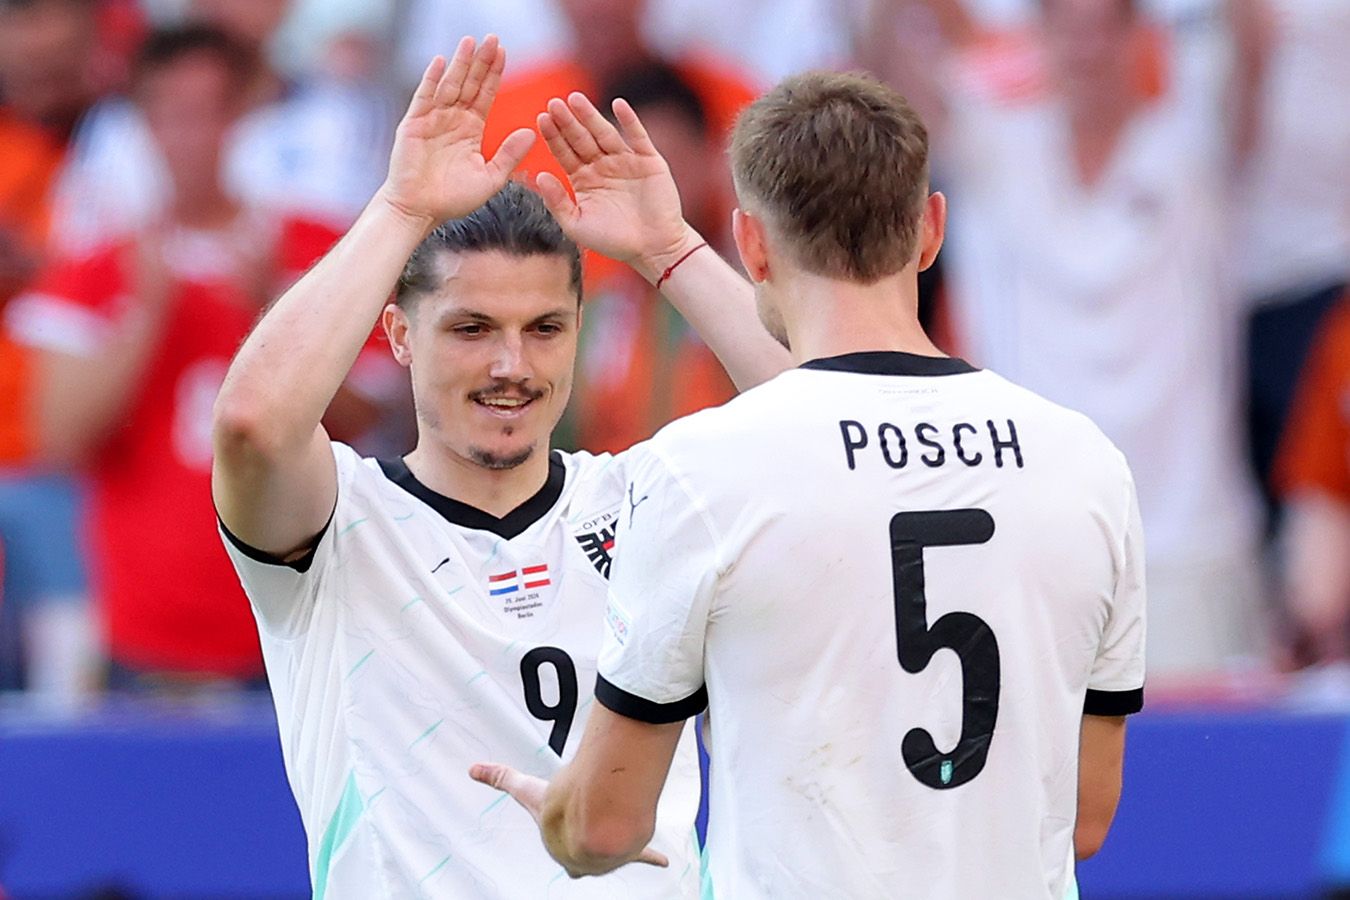 Áustria está pela segunda vez na história nos playoffs do Campeonato Europeu